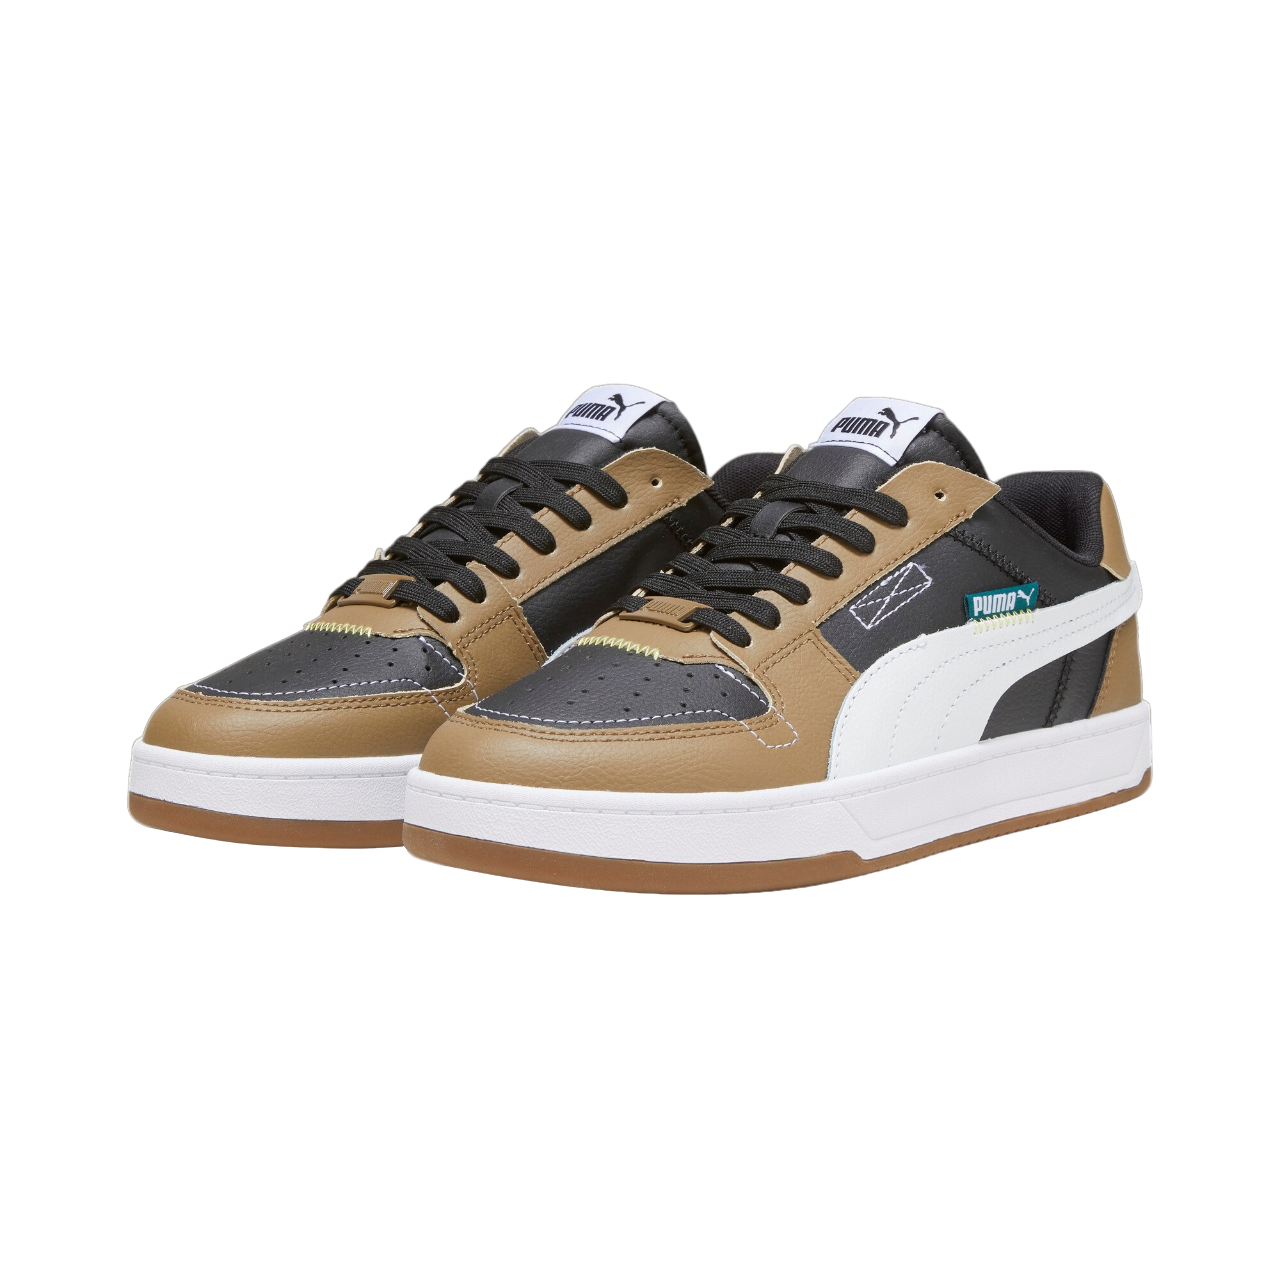 Puma scarpa sneakers da uomo Caven 2.0 VTG 392332 05 nero-bianco-marroncino